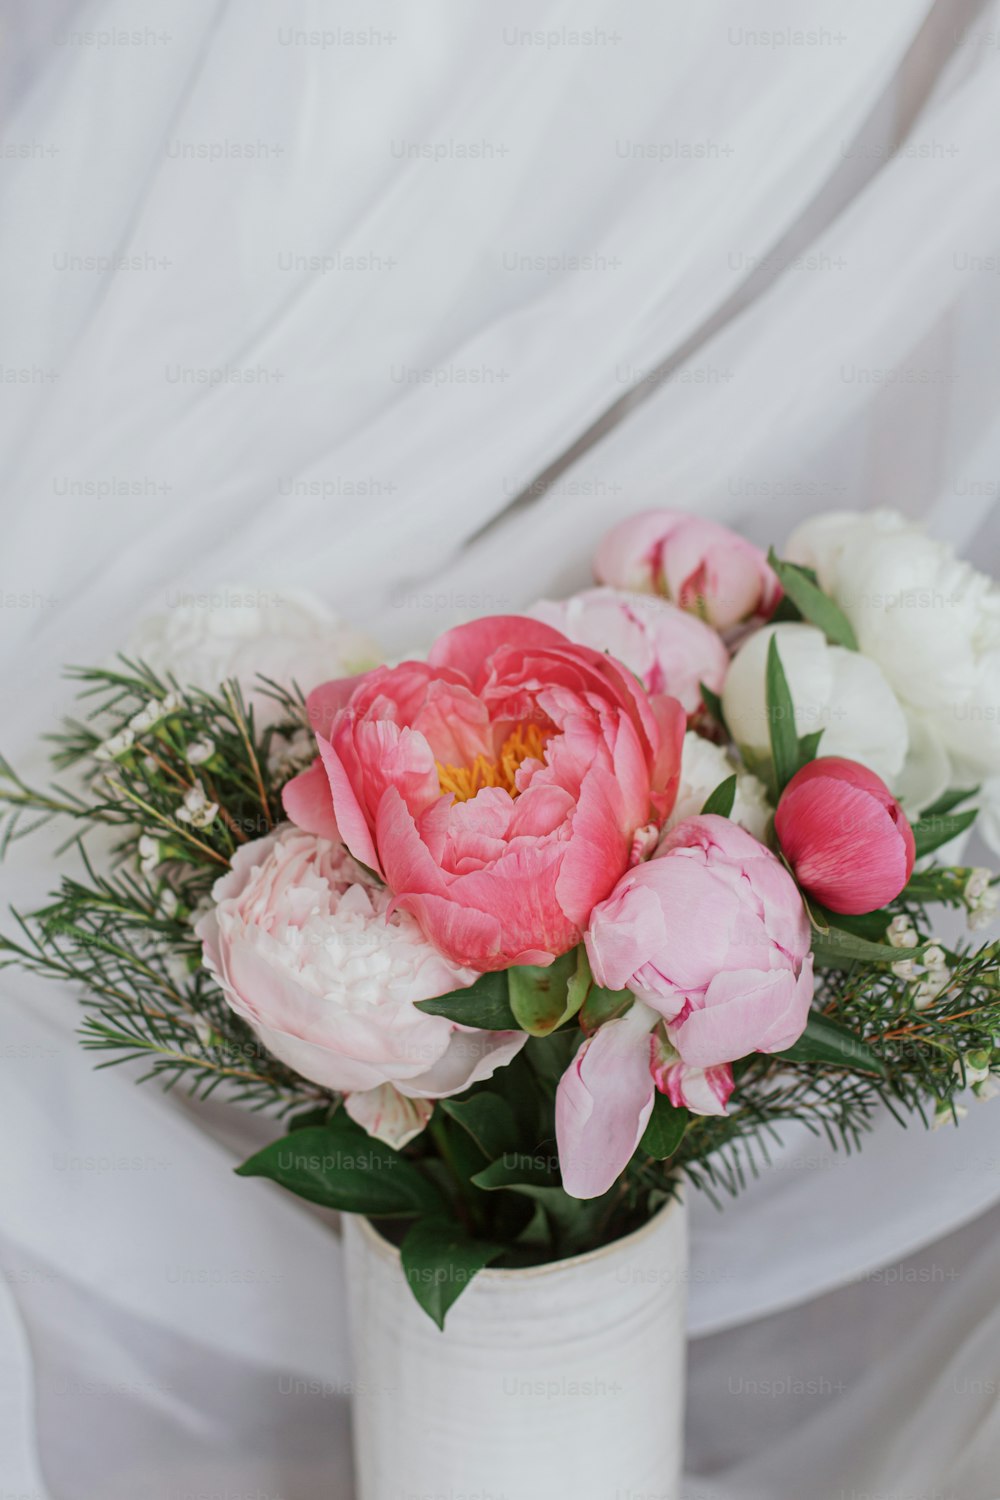 Foto Hermoso ramo de peonías con estilo sobre fondo de tela blanca suave.  Flores de peonía rosas y blancas en jarrón de cerámica sobre fondo rústico  pastel. Feliz día de la madre.